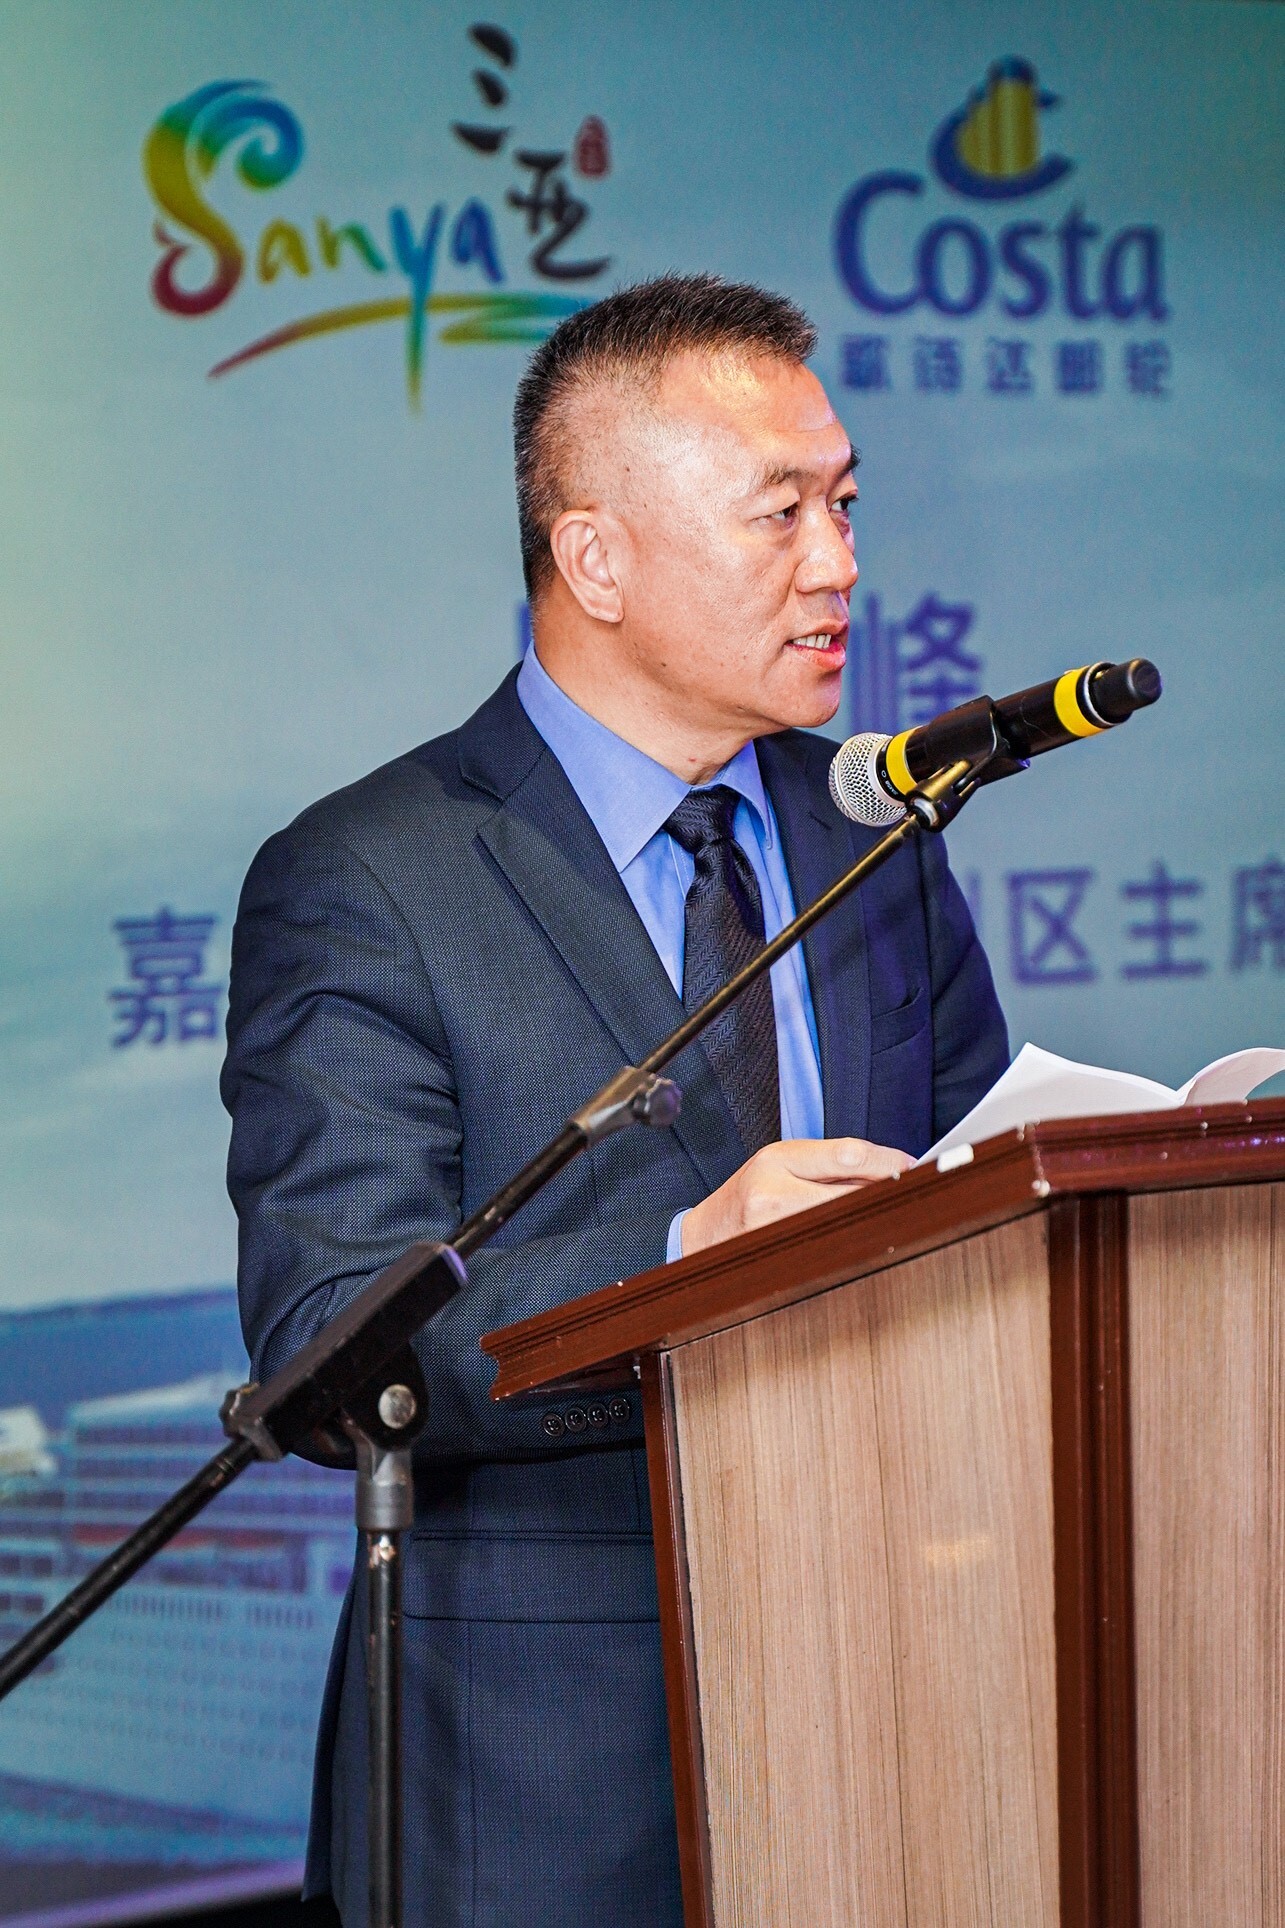 嘉年华集团亚洲区主席陈然峰（Roger Chen) 发表讲话